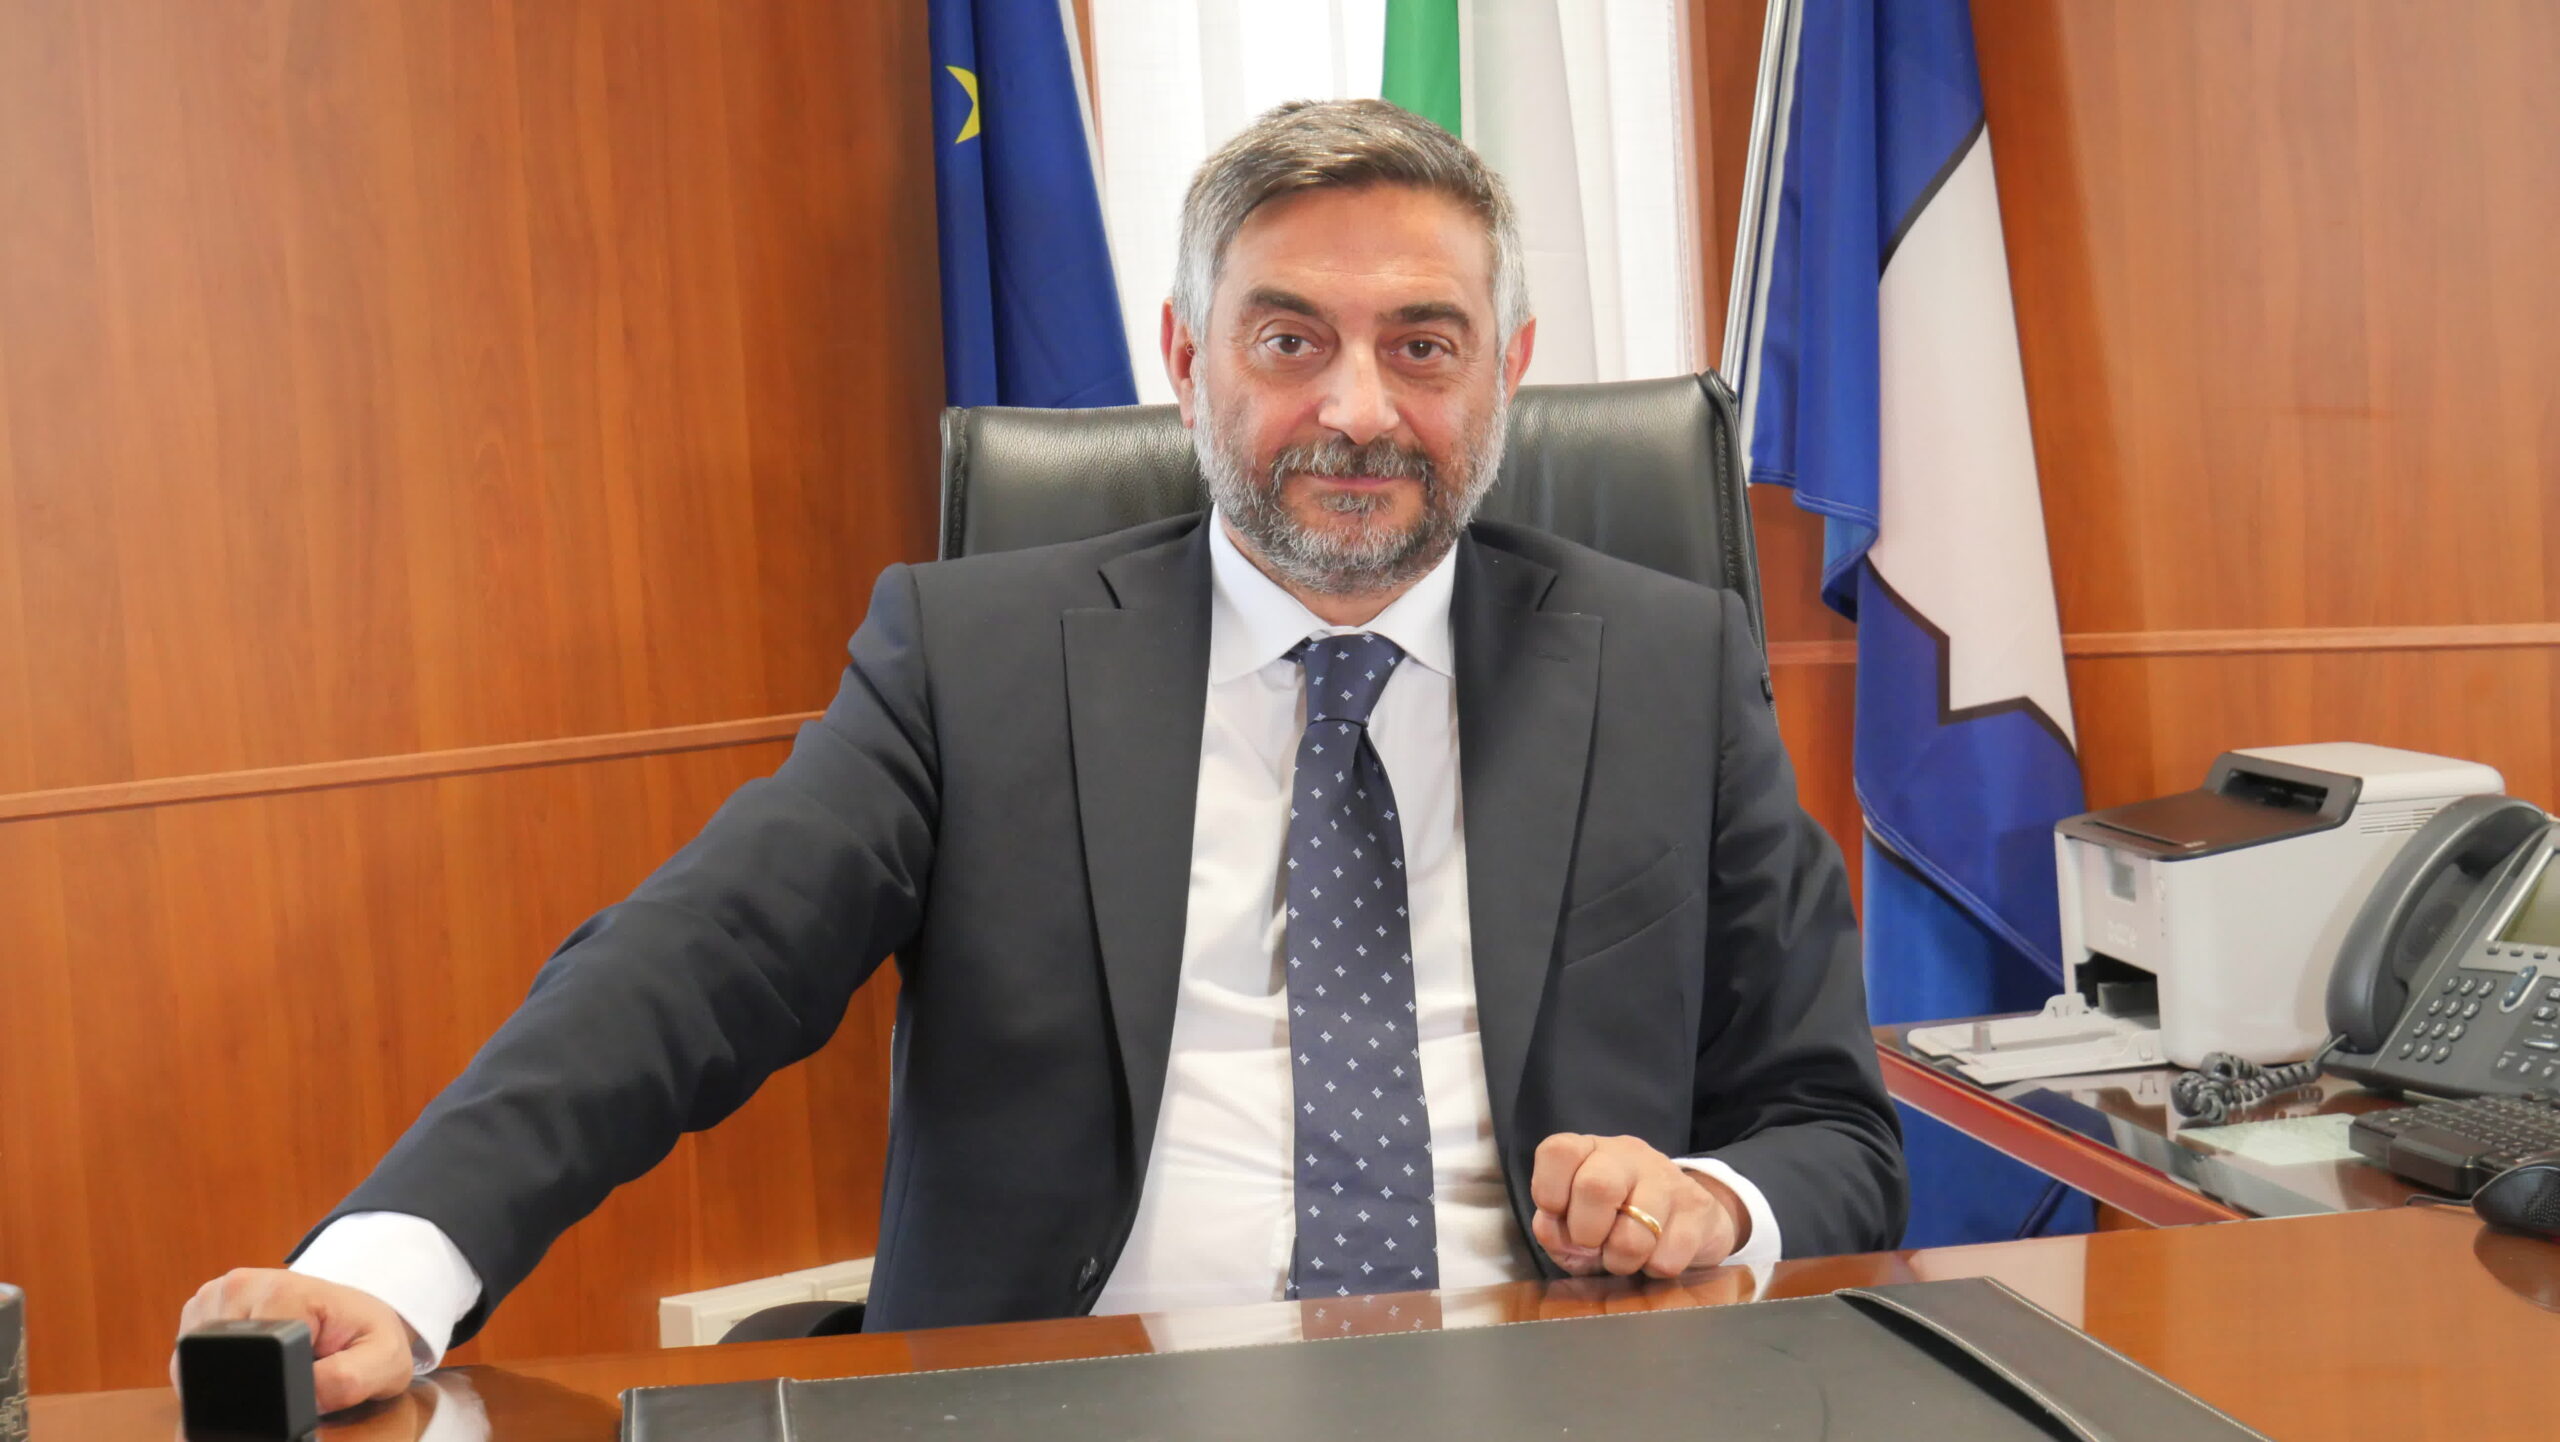 Sala Consilina: chiusura Tribunale, consigliere regionale Matera “Forze politiche carnefici”